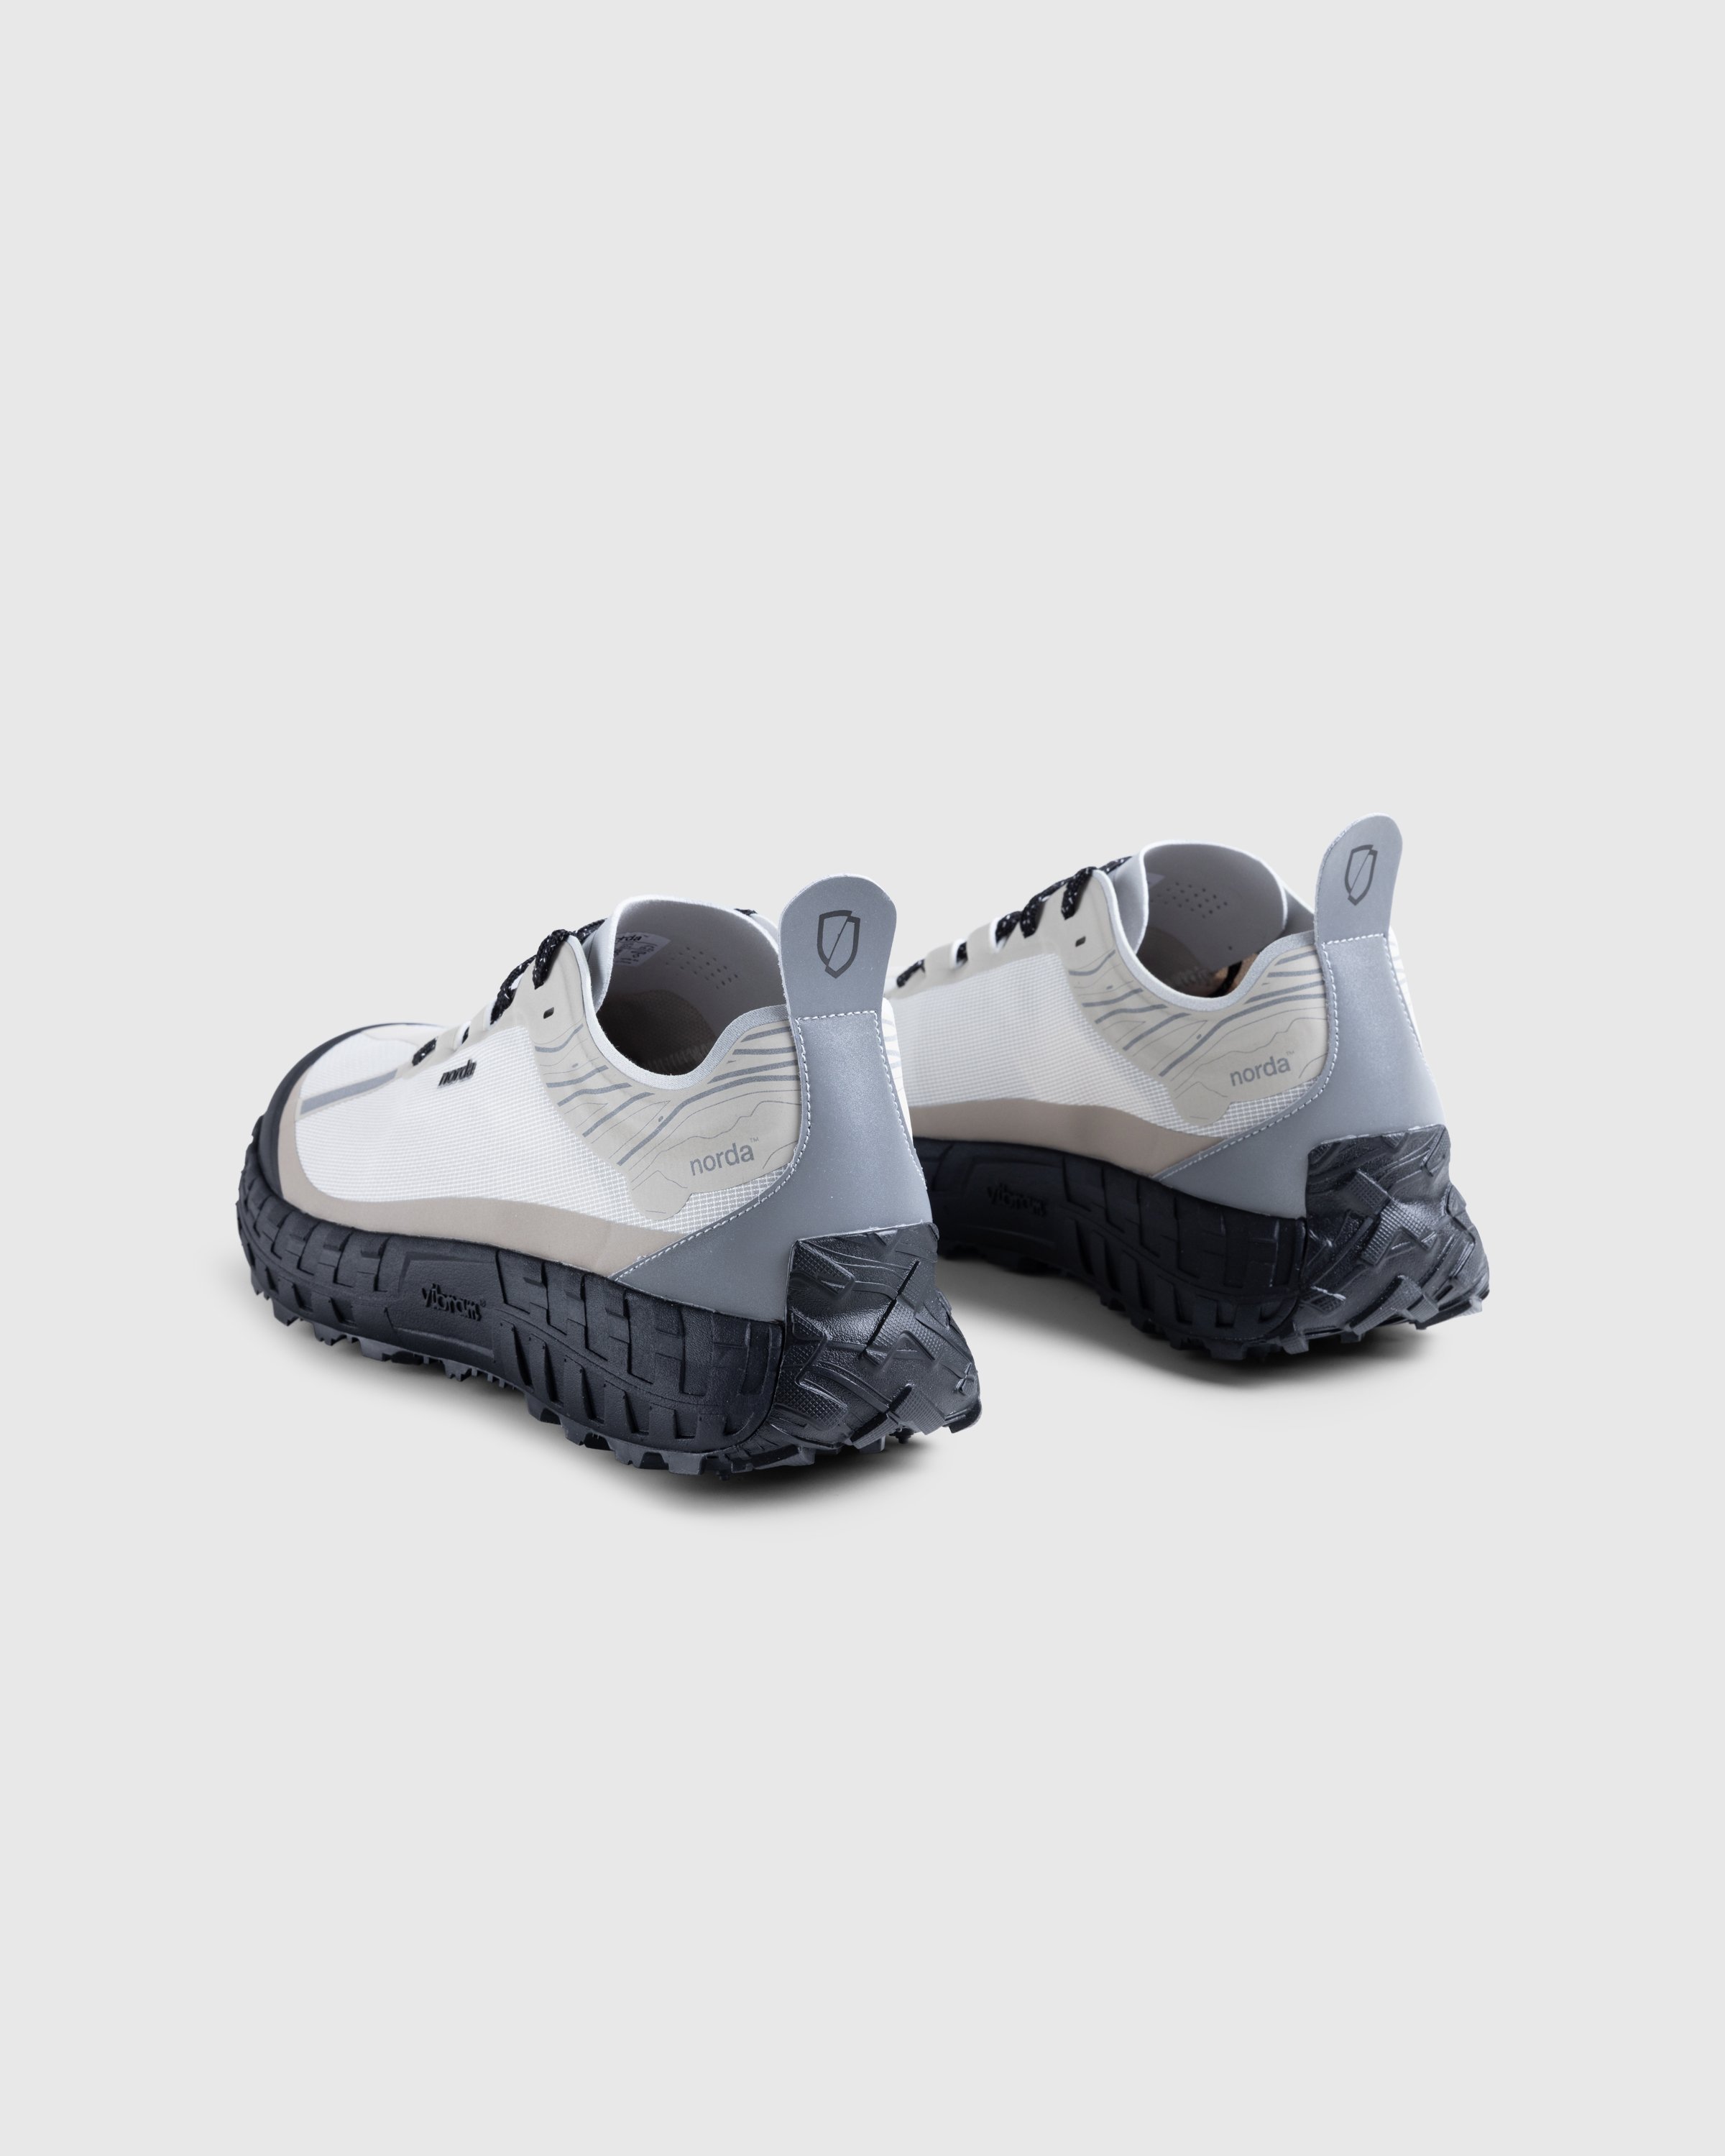 Norda - NORDA001-M - Footwear - Grey - Image 4